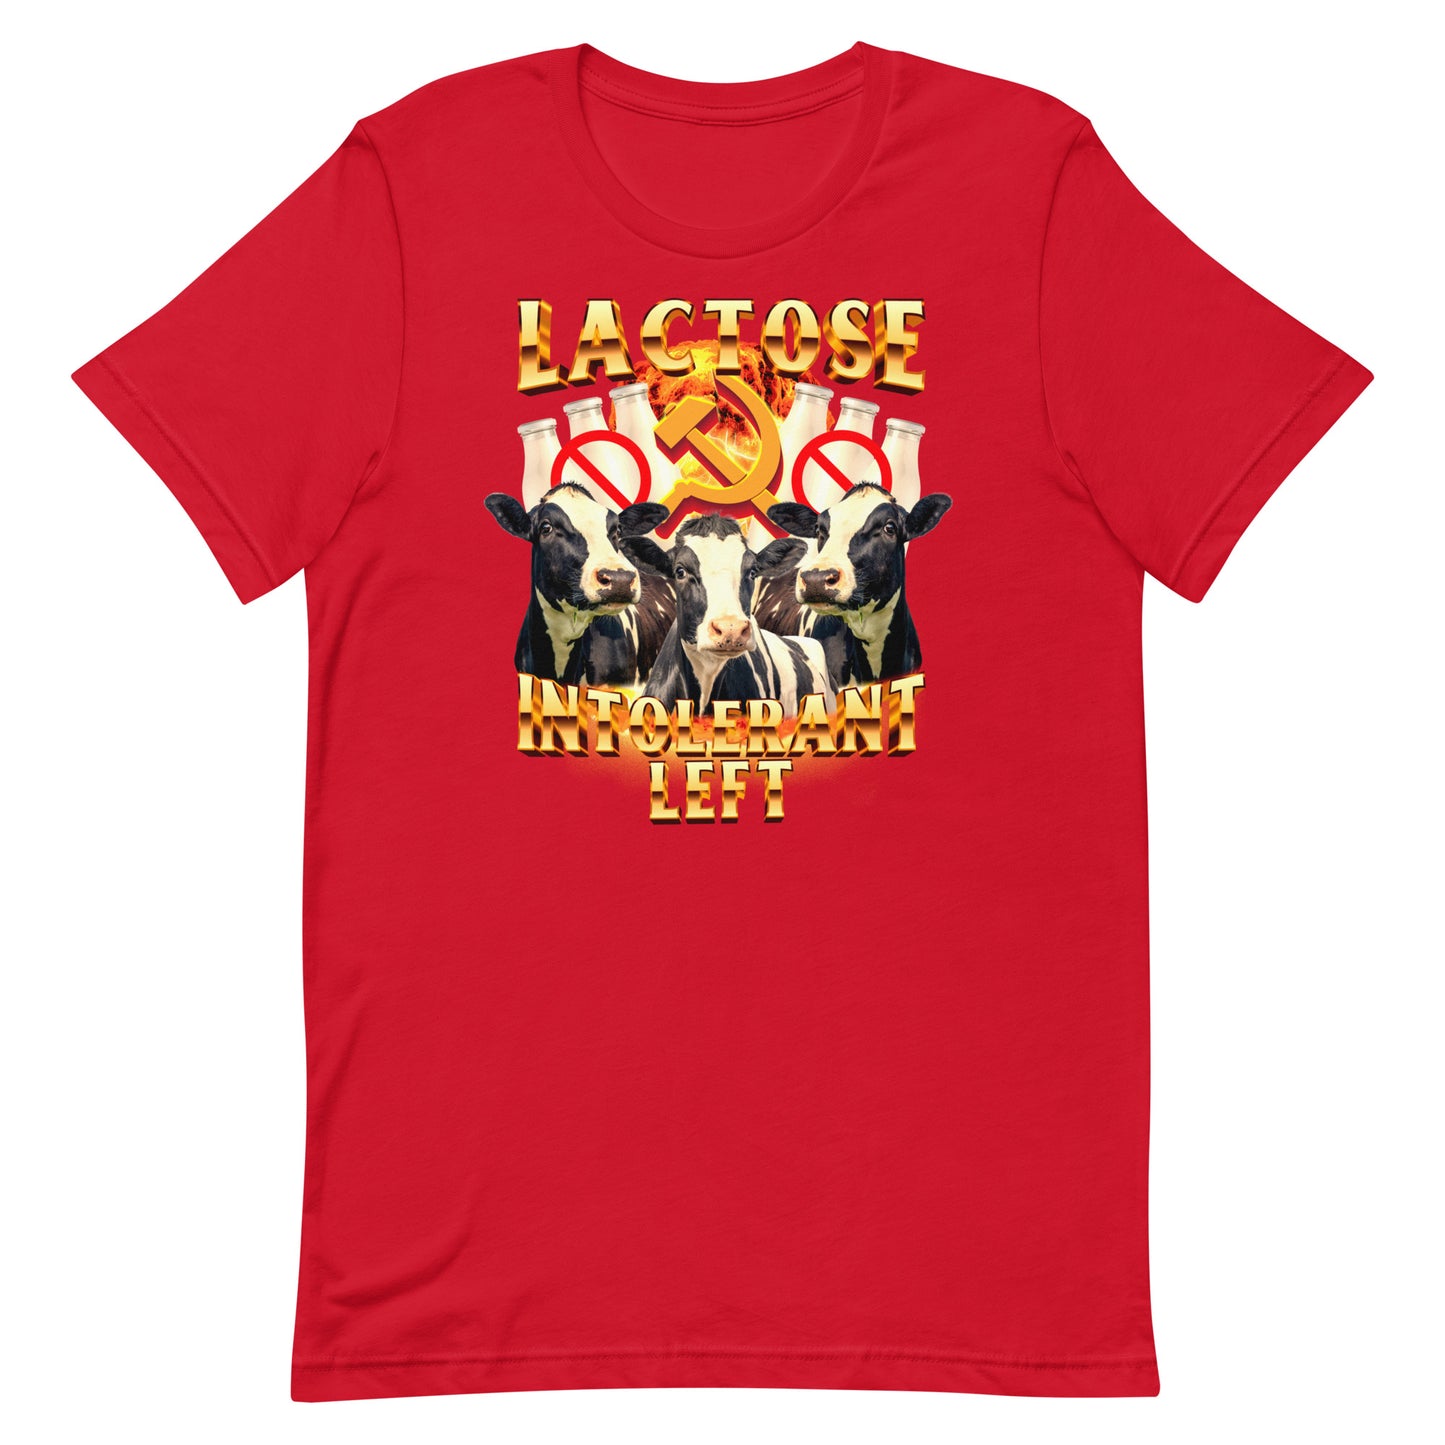 Lactose Intolerant Left Unisex t-shirt